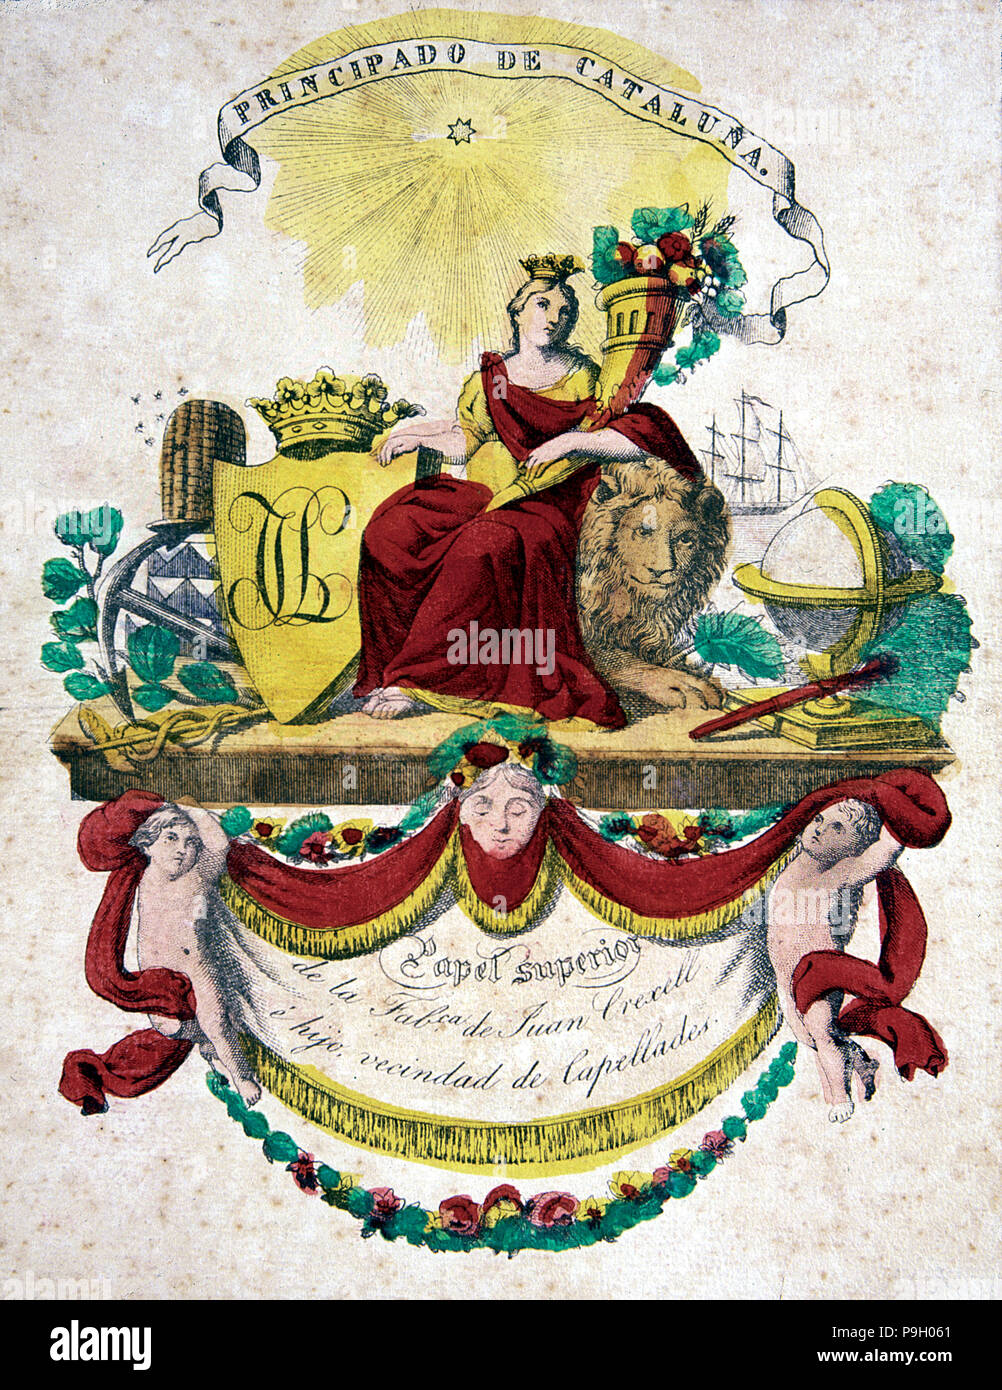 Lato coperchio colorato del Museo della Carta in Capellades, xilografia. Foto Stock